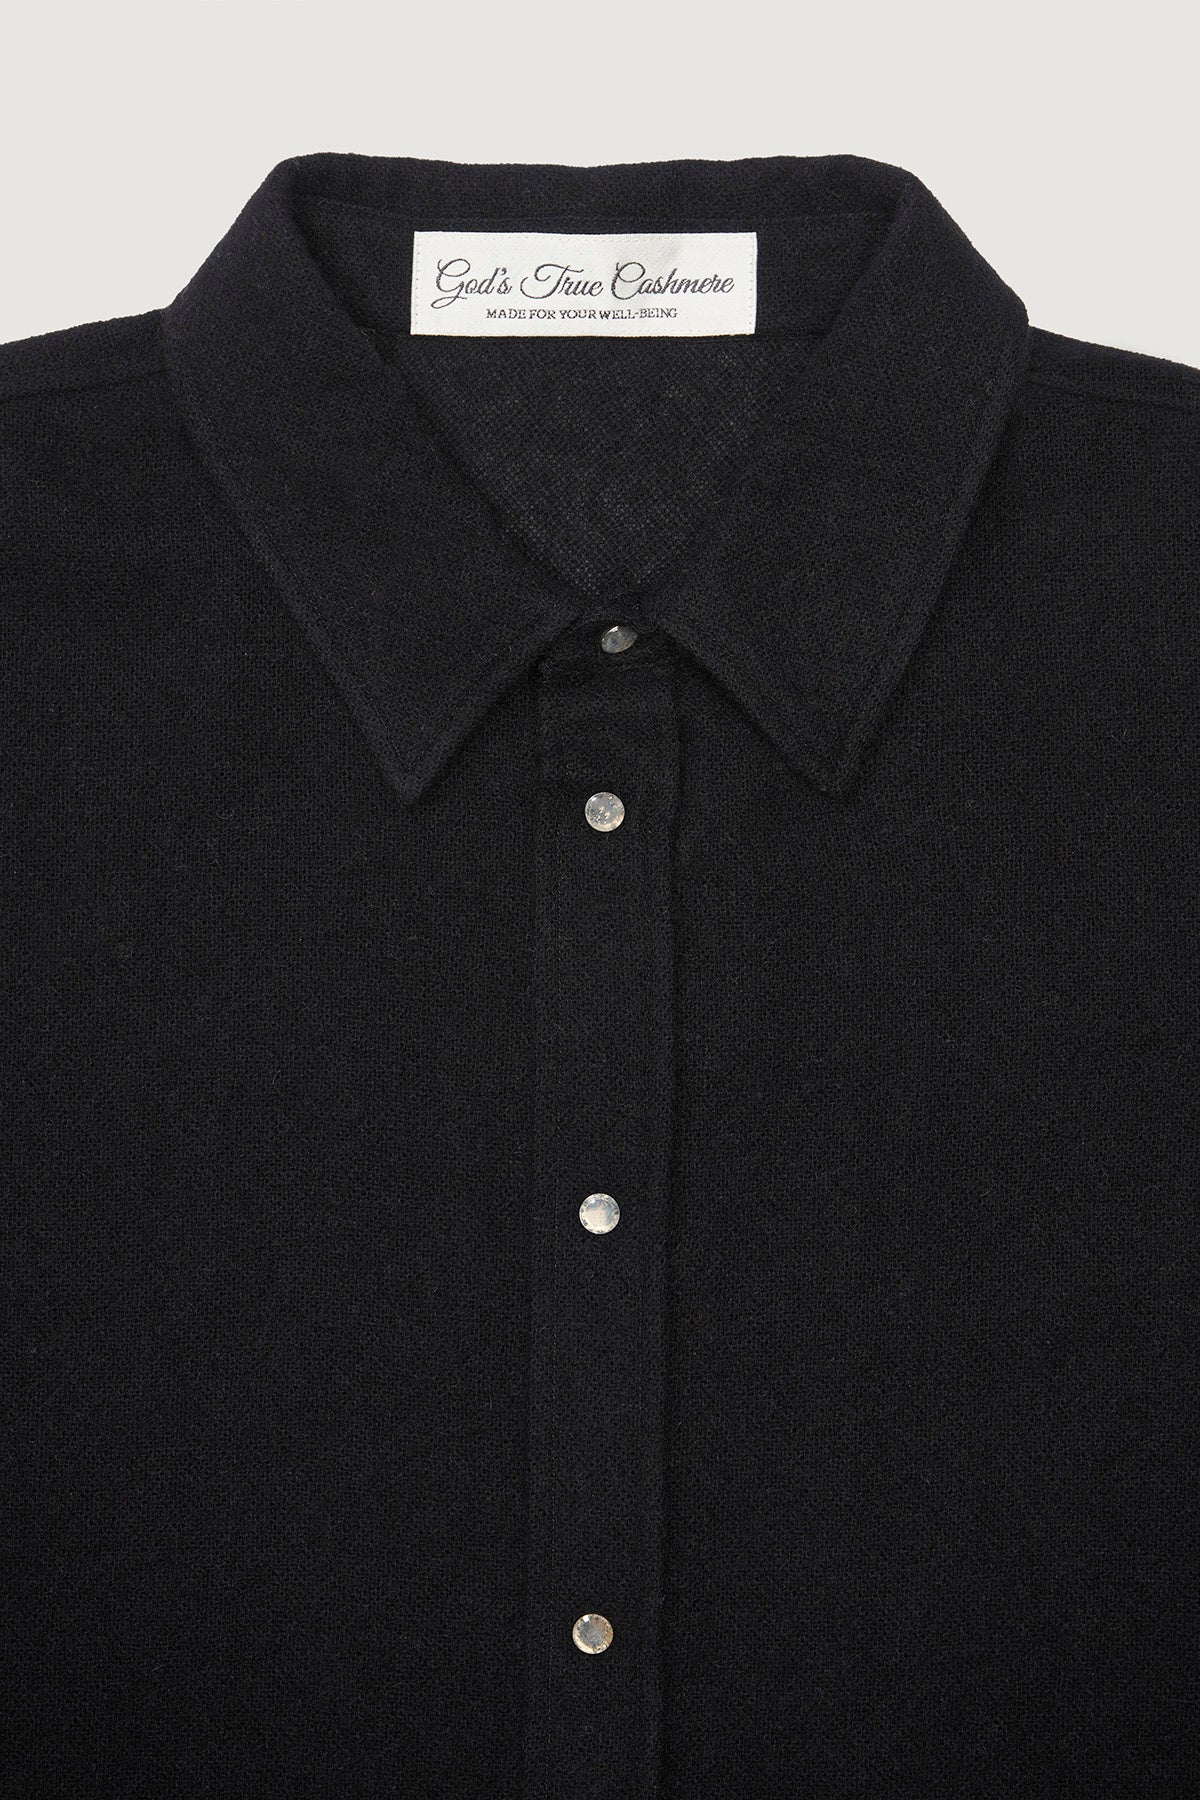 Black Gauze Cashmere Shirt